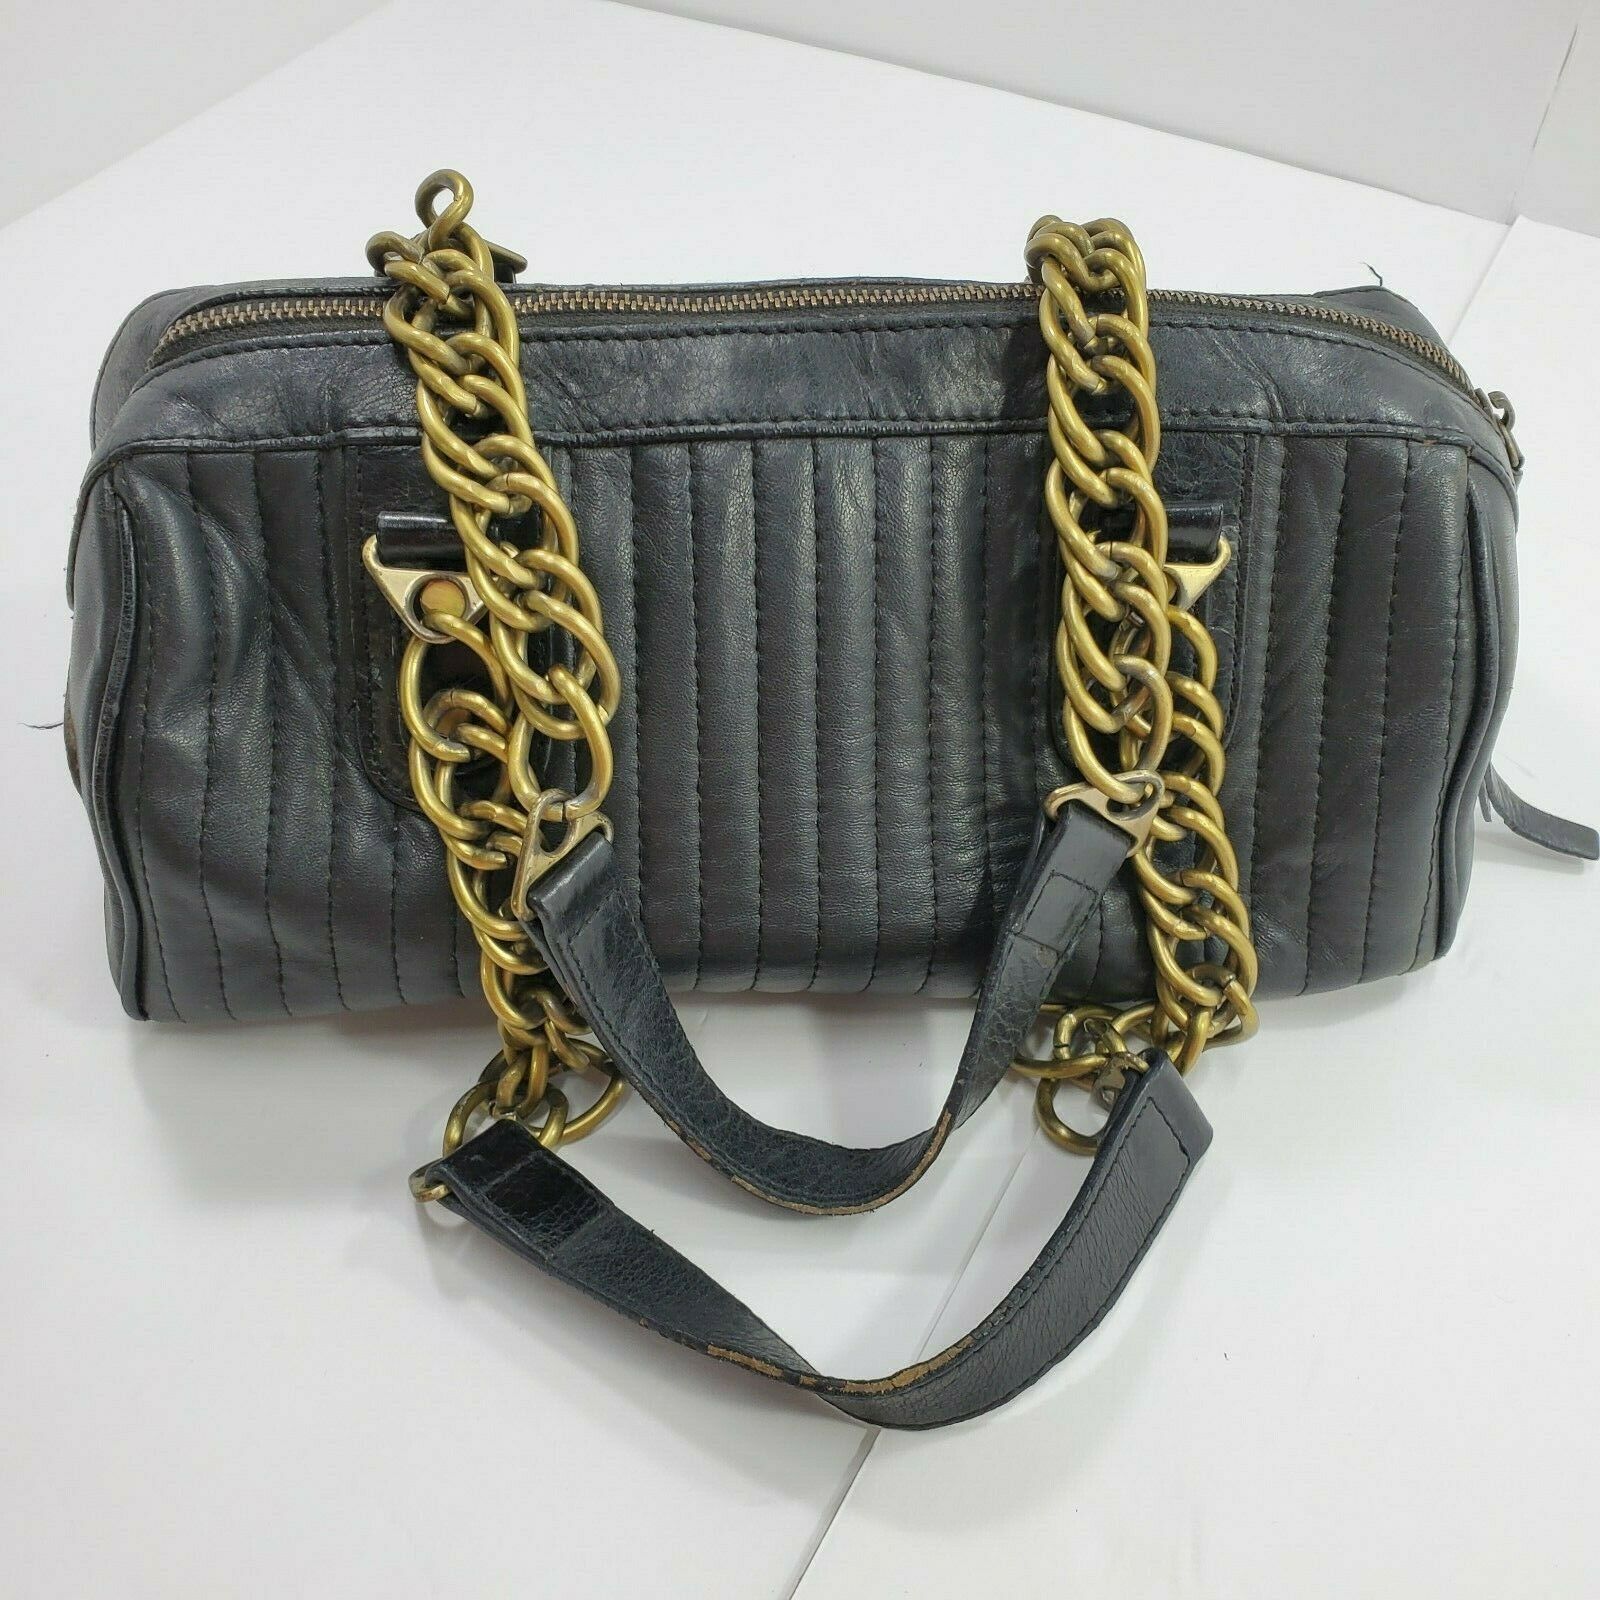 Aqua Madonna Black Leather Purse Satchel Gold Chain Detail Straps Bag - Women&#39;s Bags & Handbags